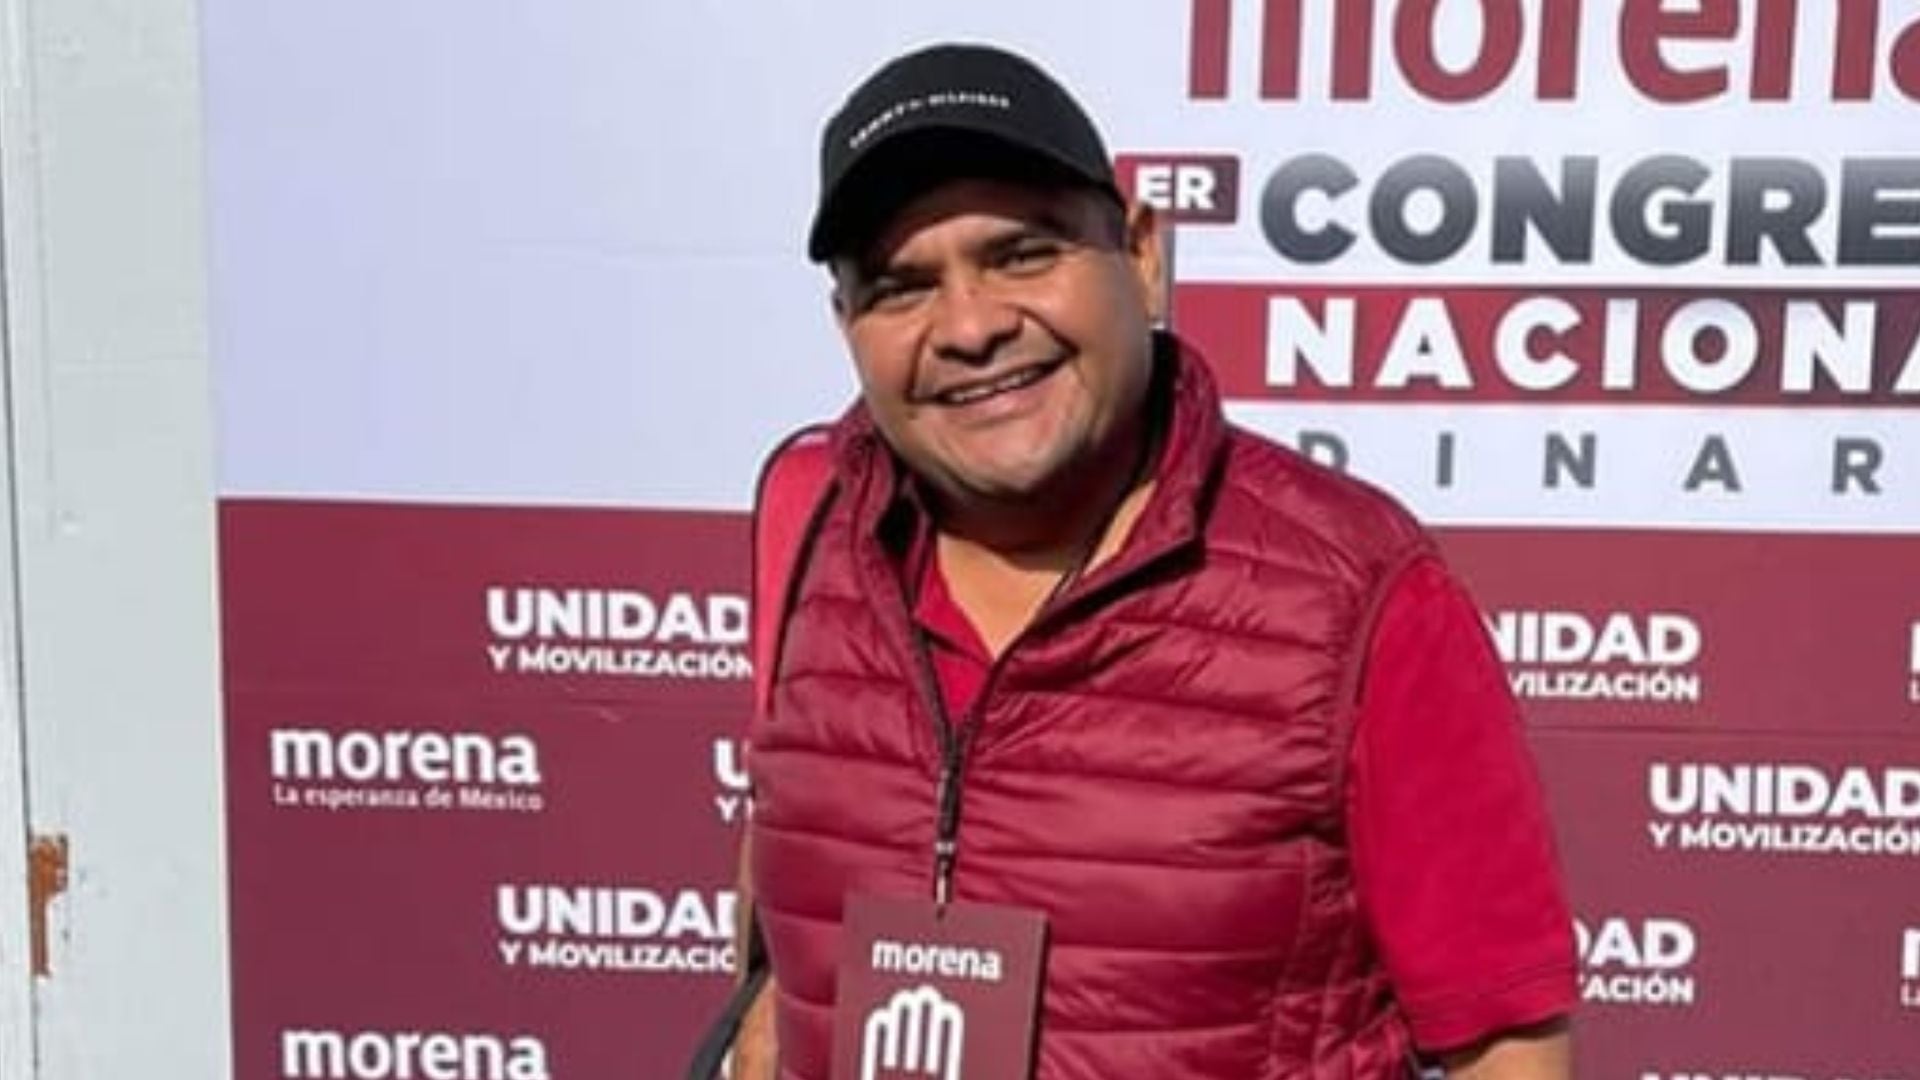 Nicolás Noriega Zavala, candidato de Morena a alcalde de Mapastepec, Chiapas, atacado a tiros la madrugada del domingo 19 de mayo